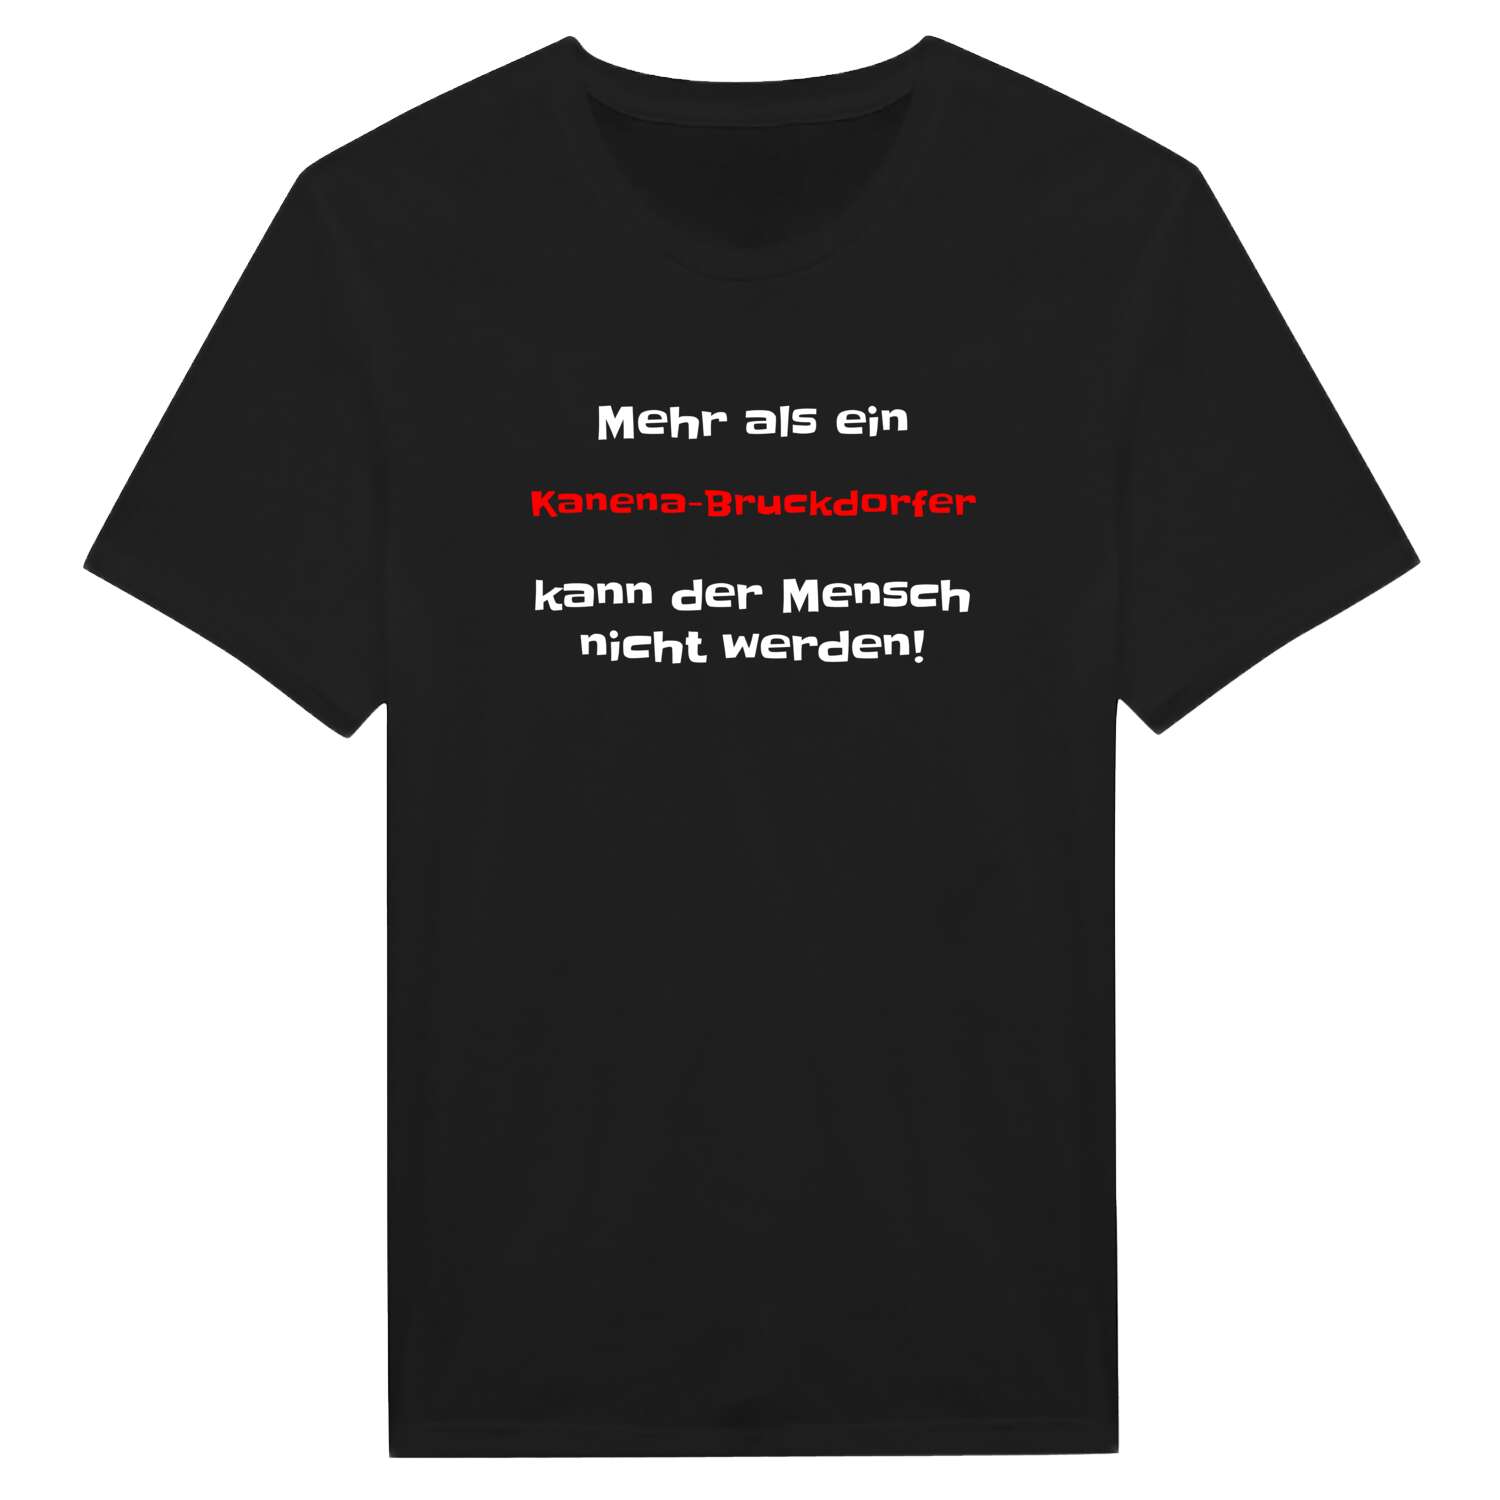 Kanena-Bruckdorf T-Shirt »Mehr als ein«